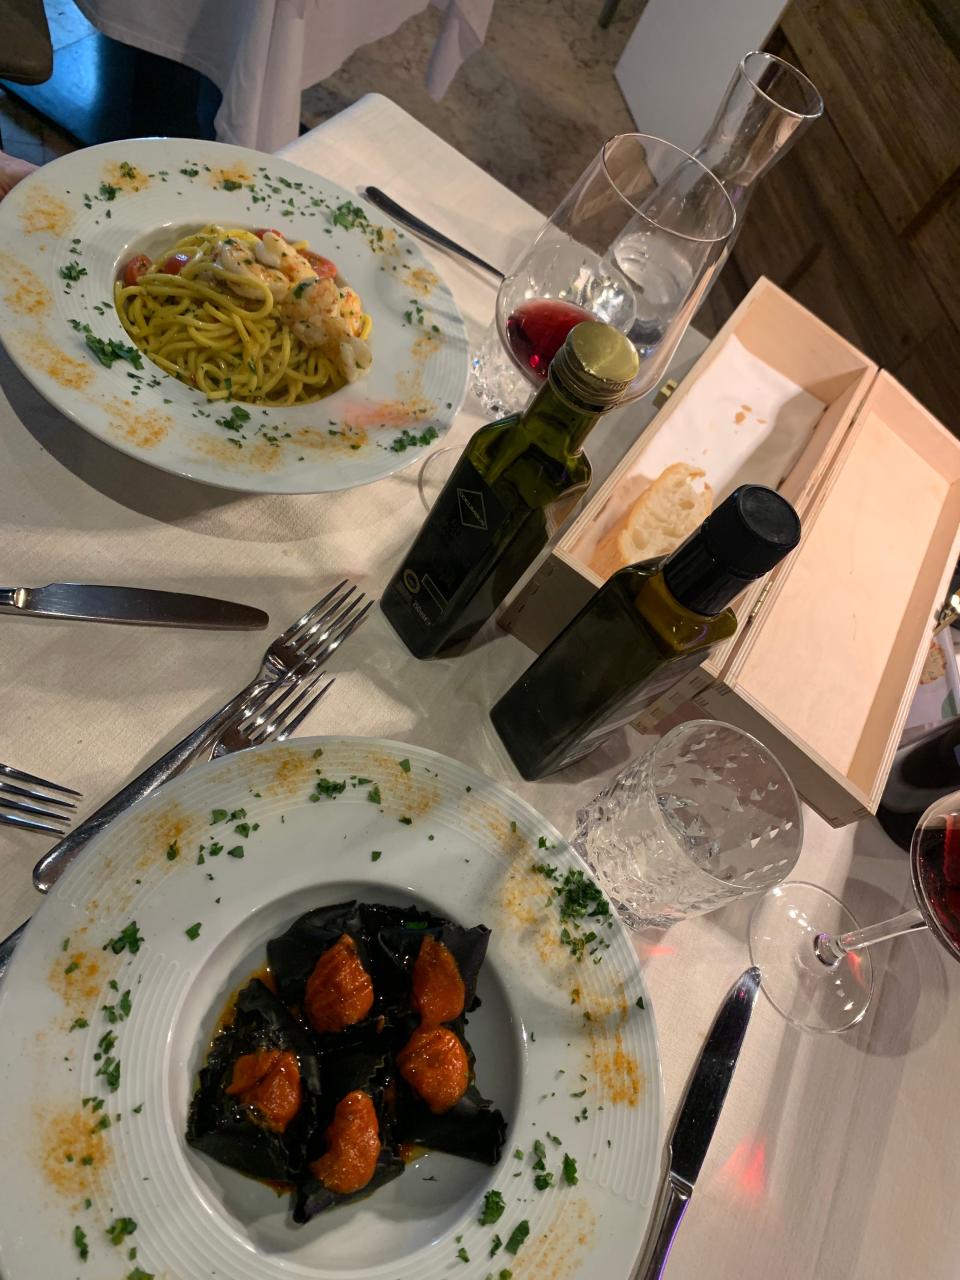 Dinner at a restaurant in Verona, Italy.